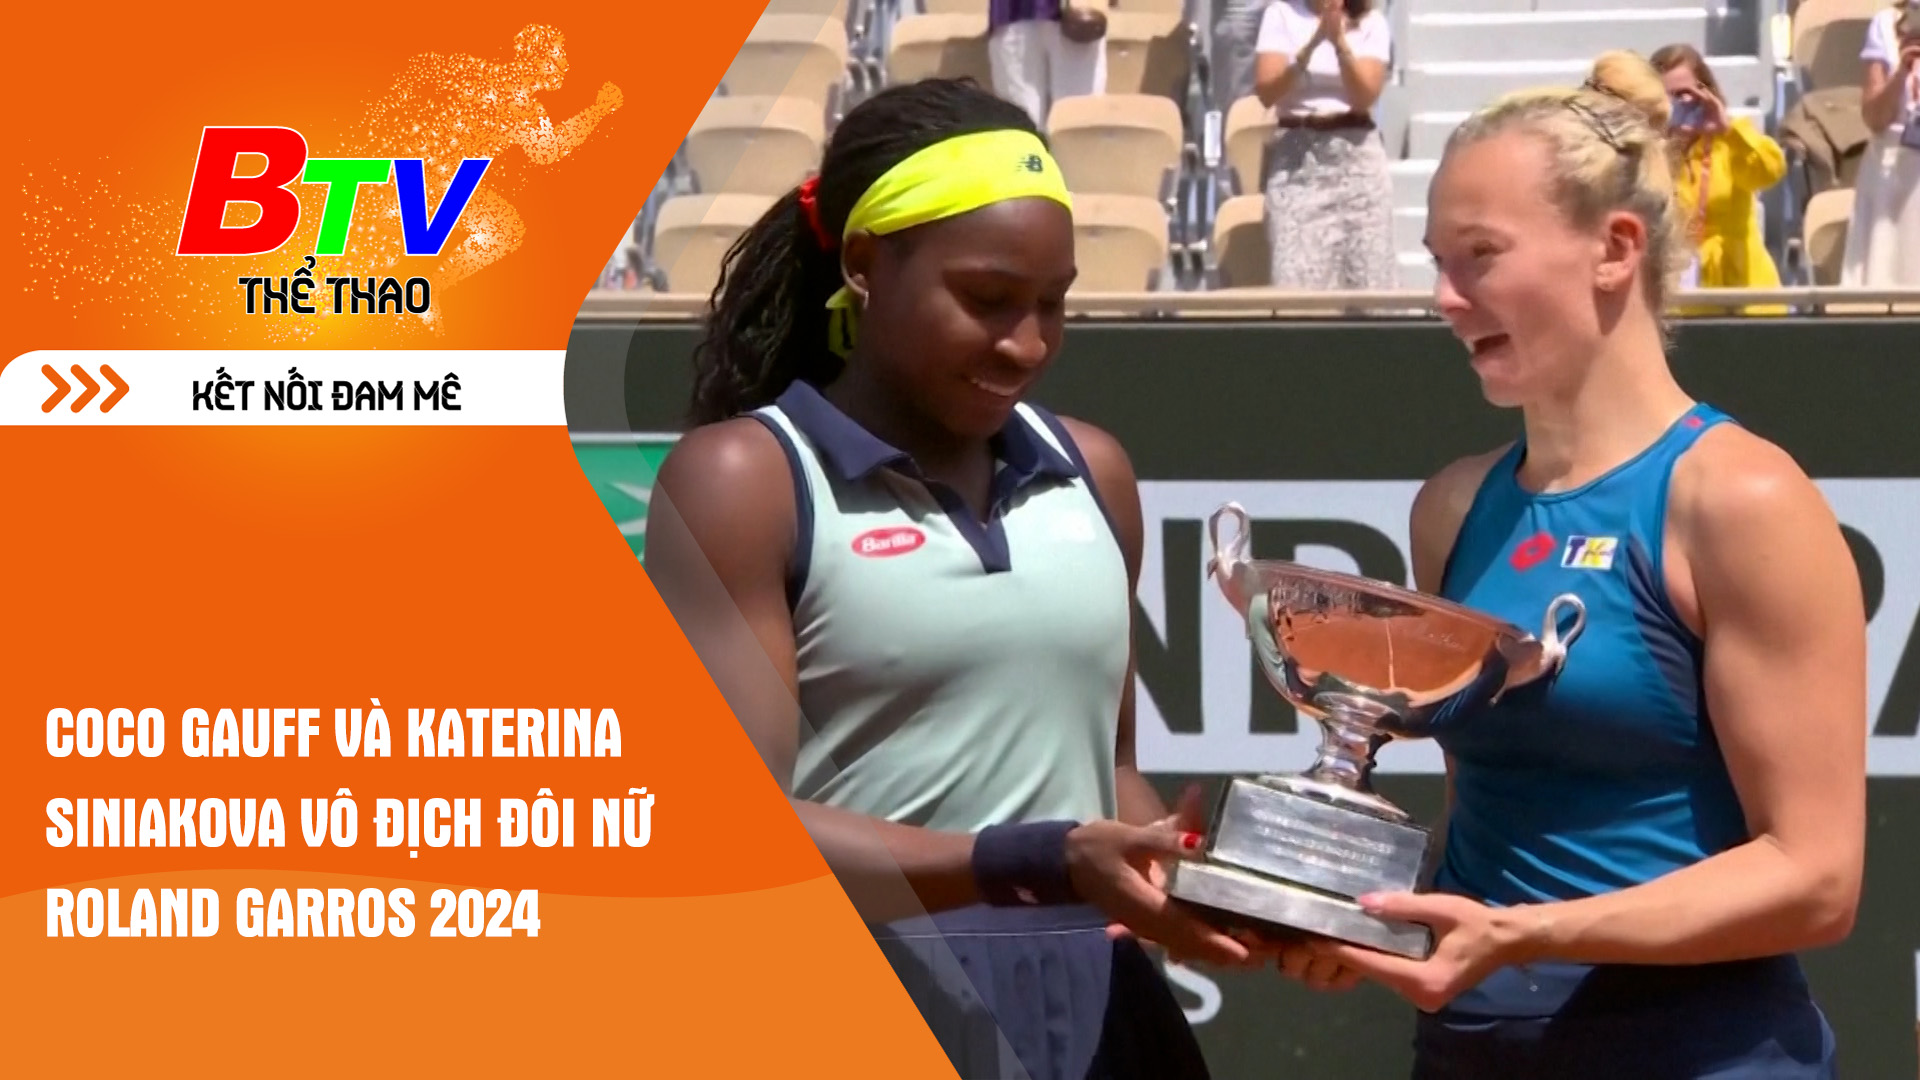 Coco Gauff và Katerina Siniakova vô địch đôi nữ Roland Garros 2024 | Tin Thể thao 24h	